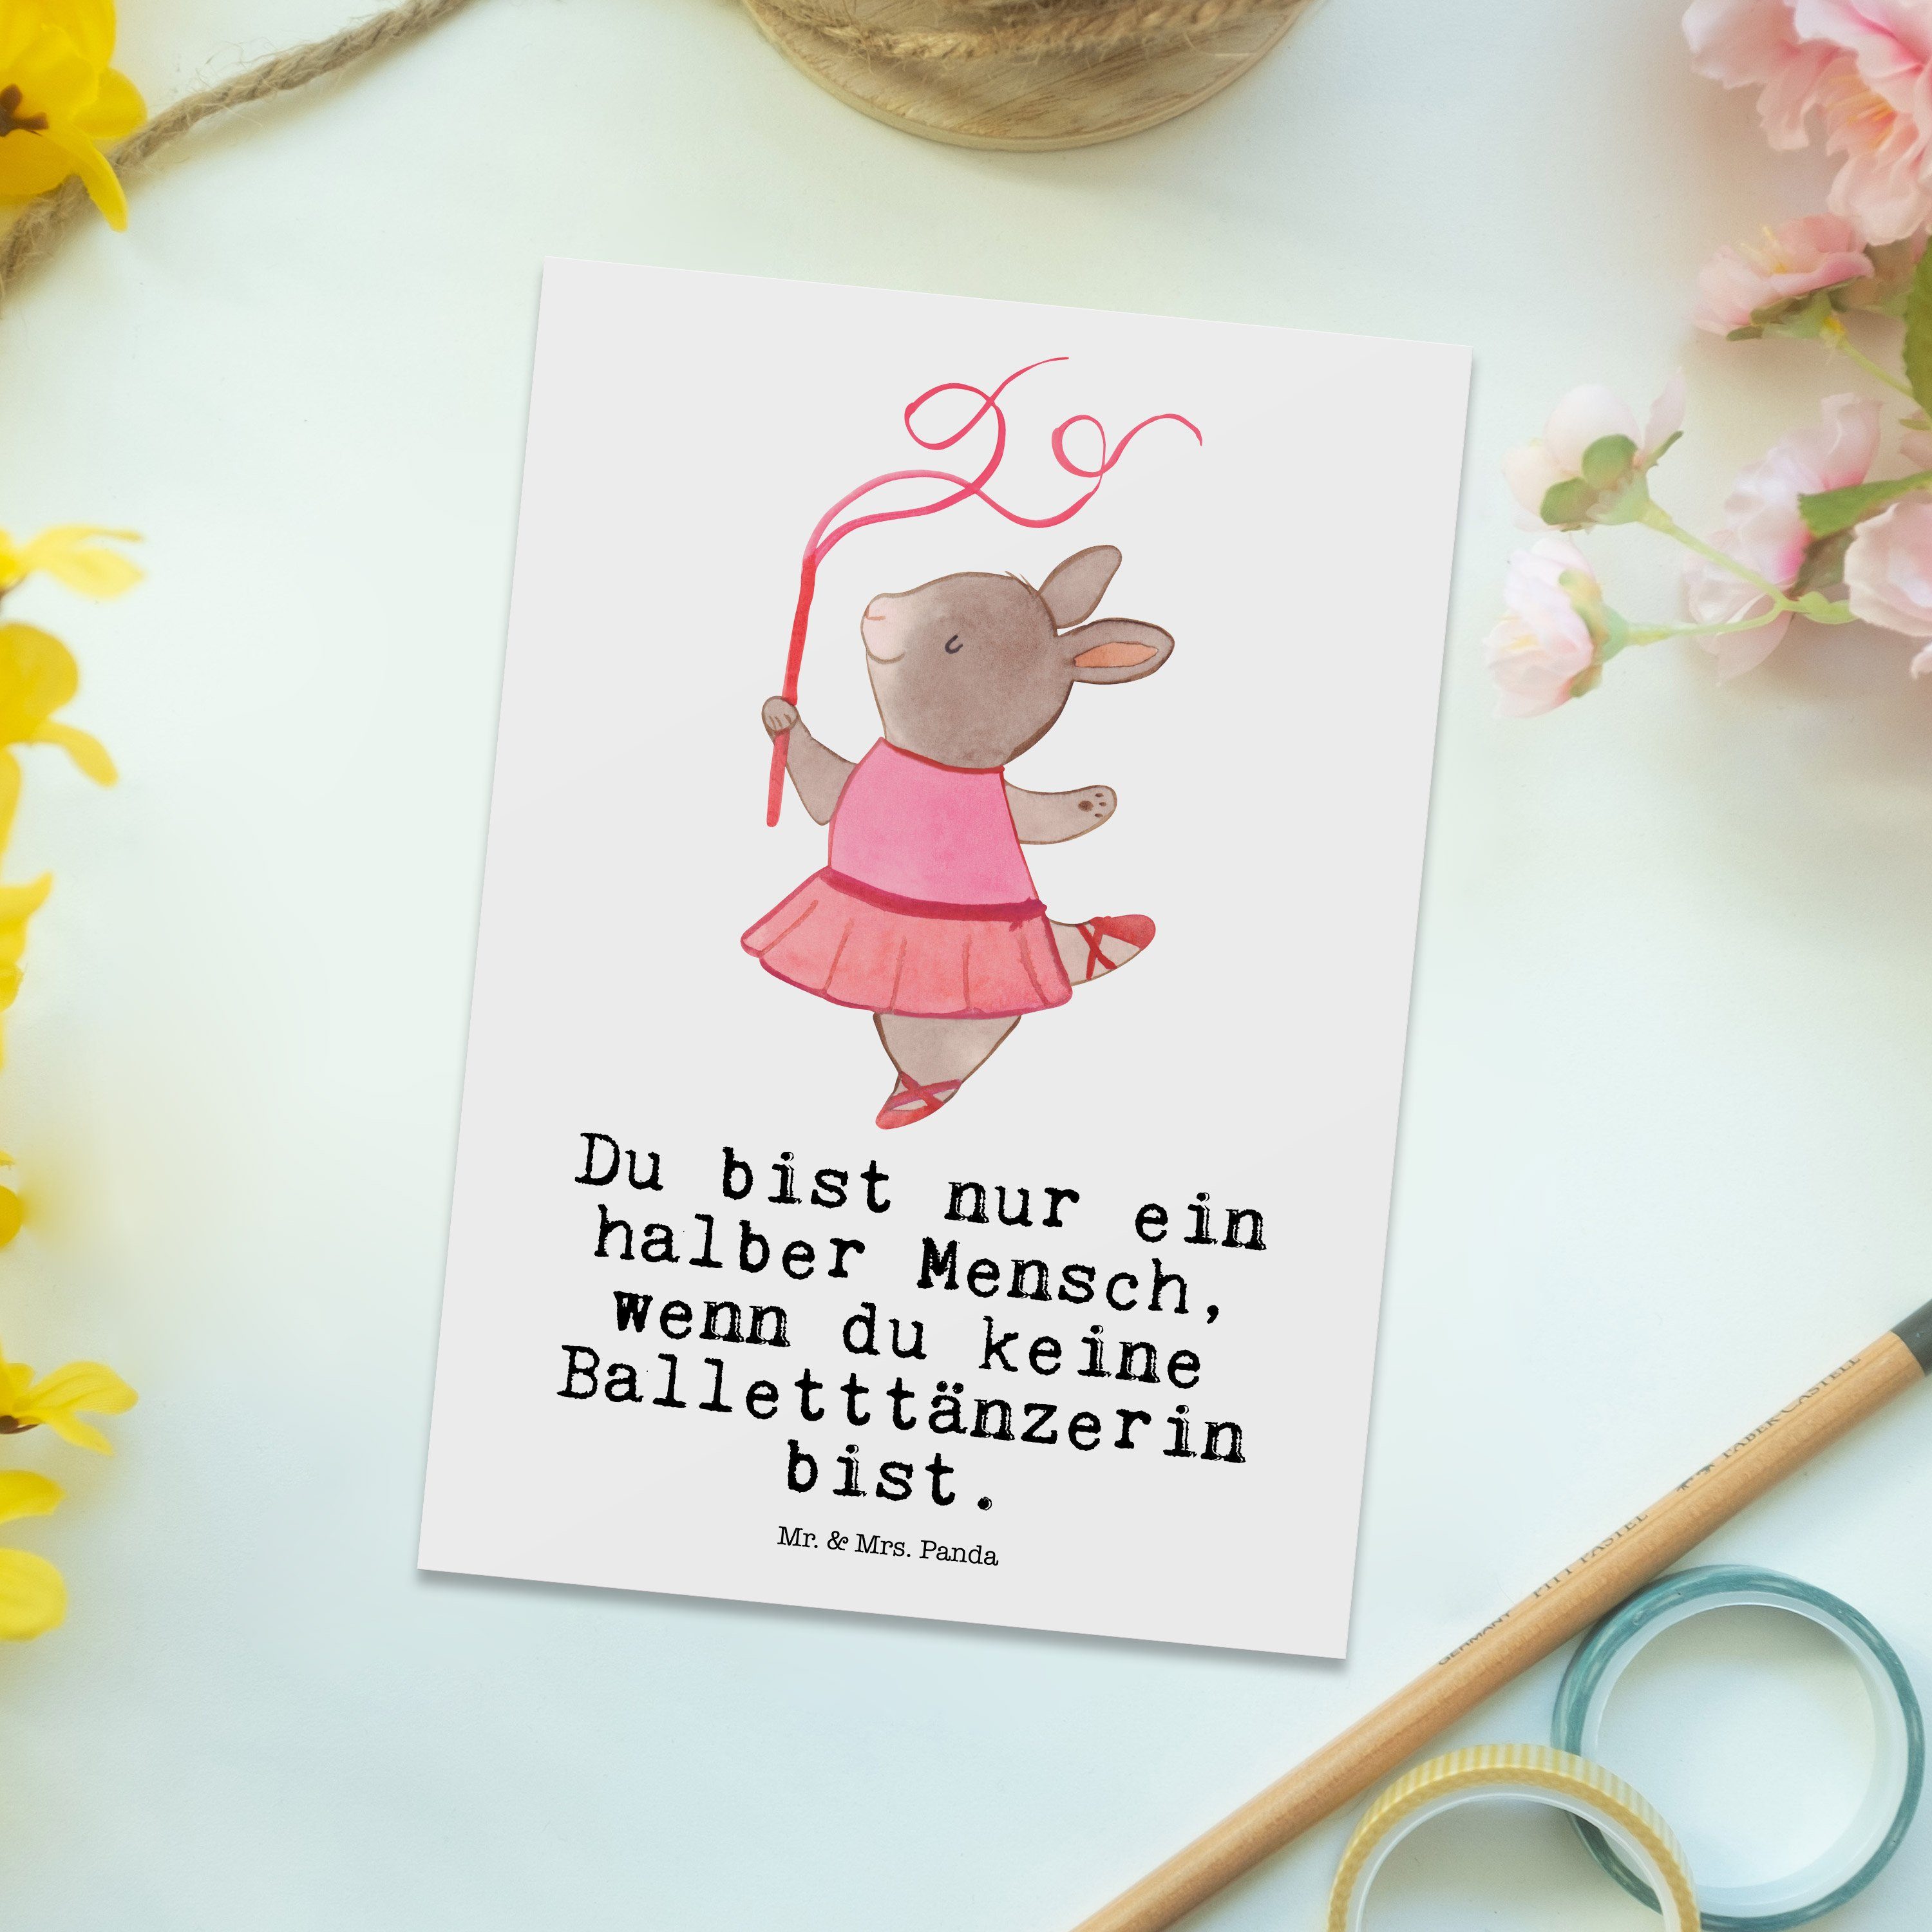 - Geschenk, & Balletttänzerin Einlad Postkarte Ballettunterricht, Mrs. - Herz mit Weiß Mr. Panda